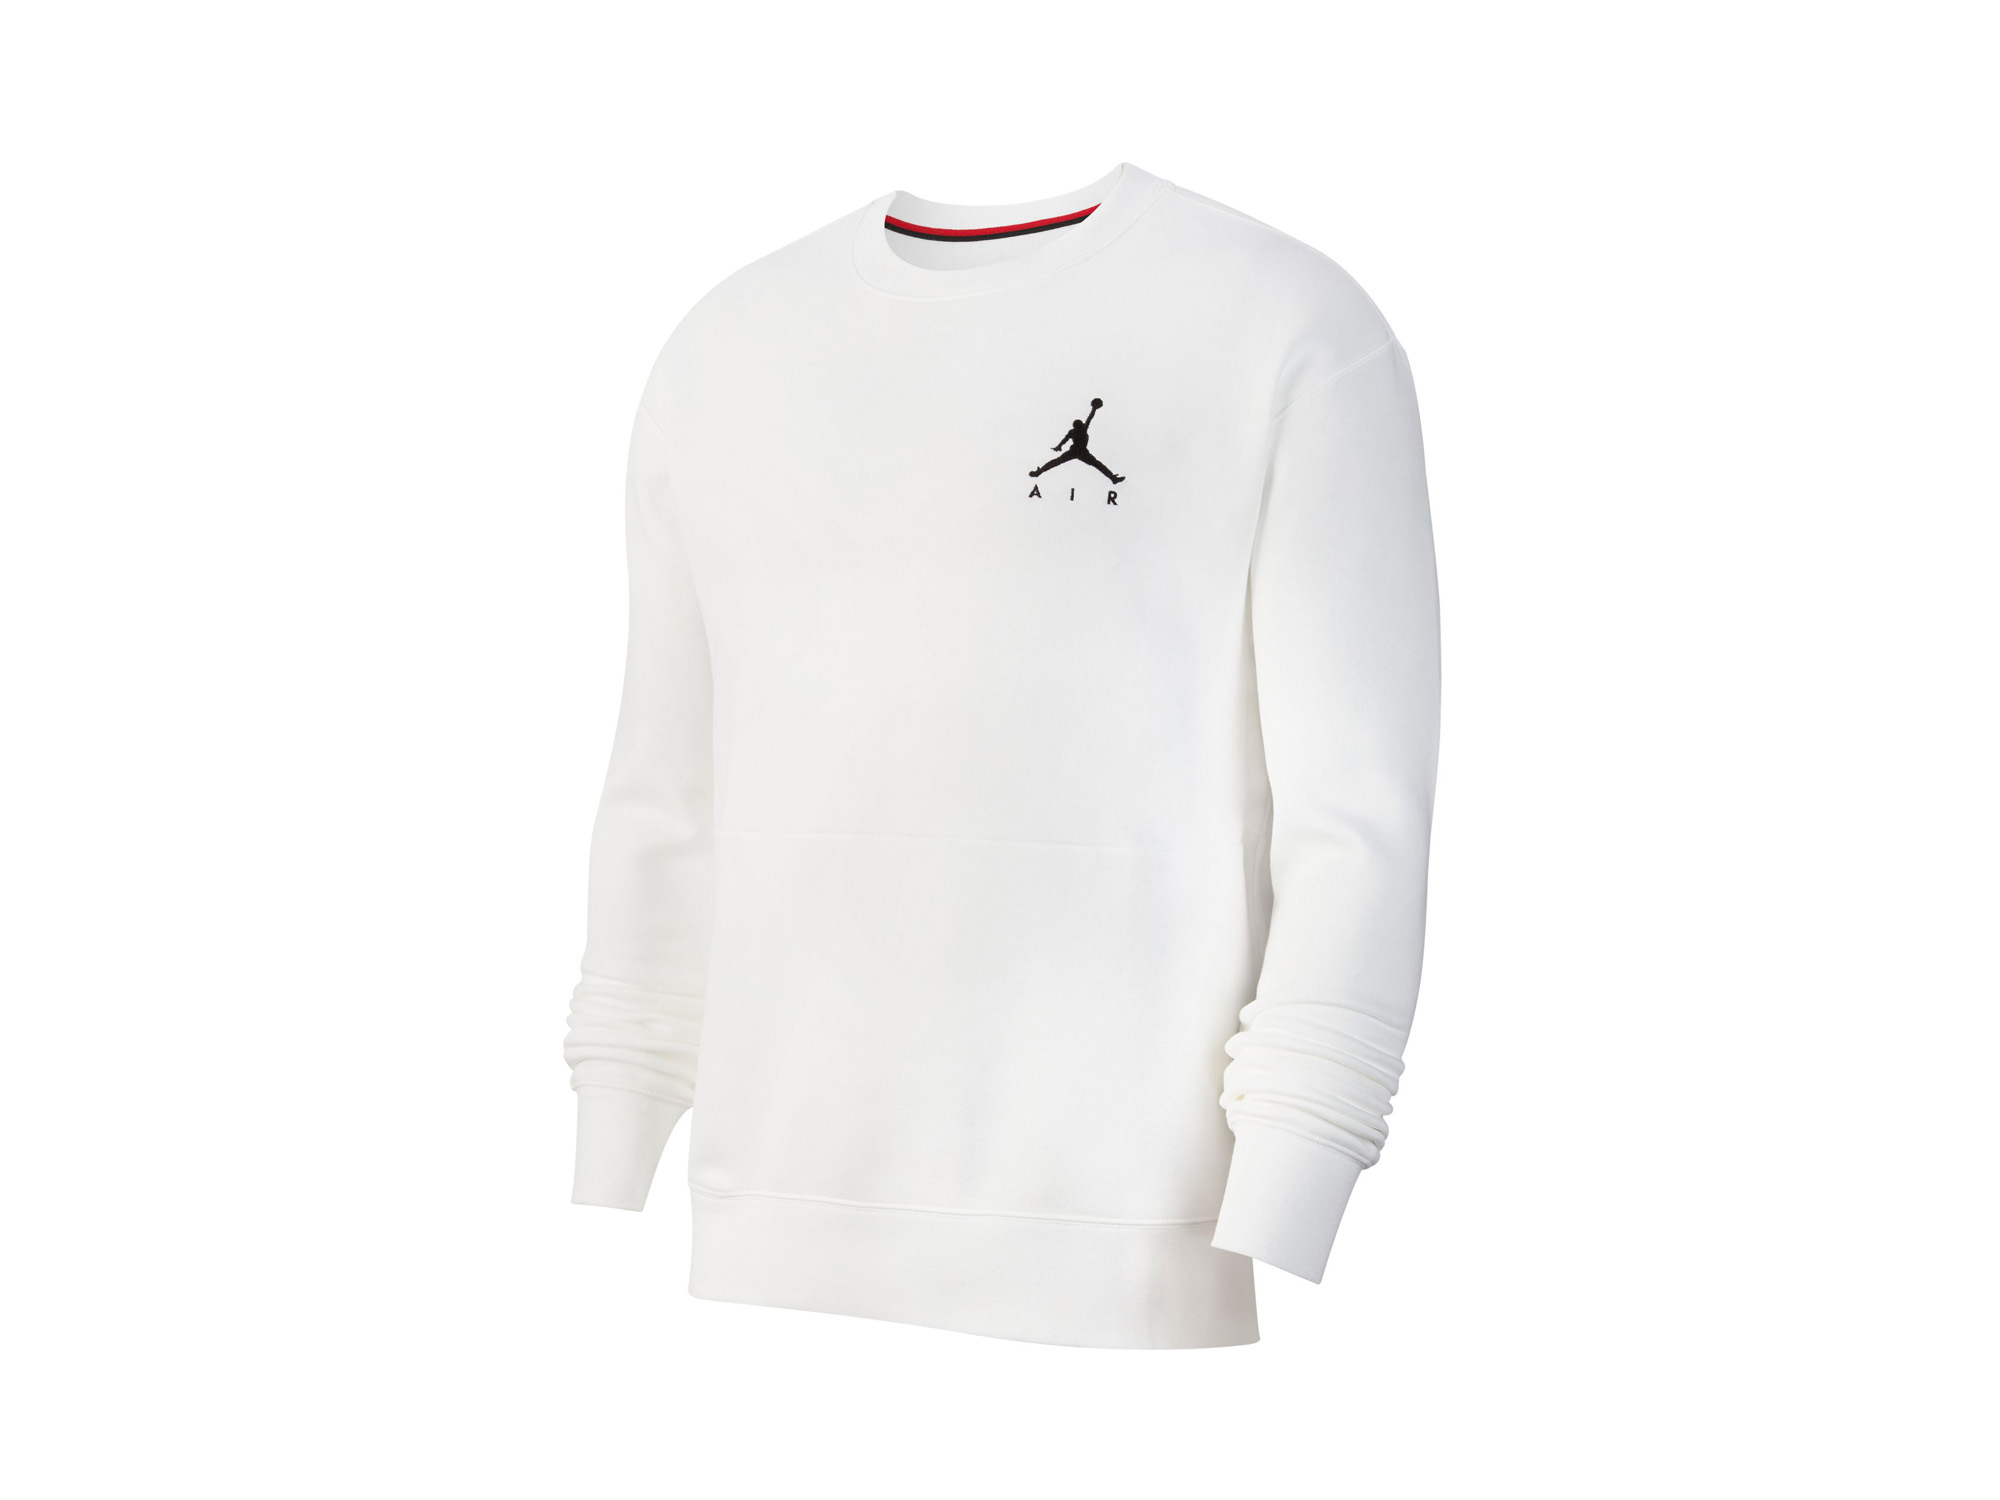 Jordan Jumpman Air Sweatshirt